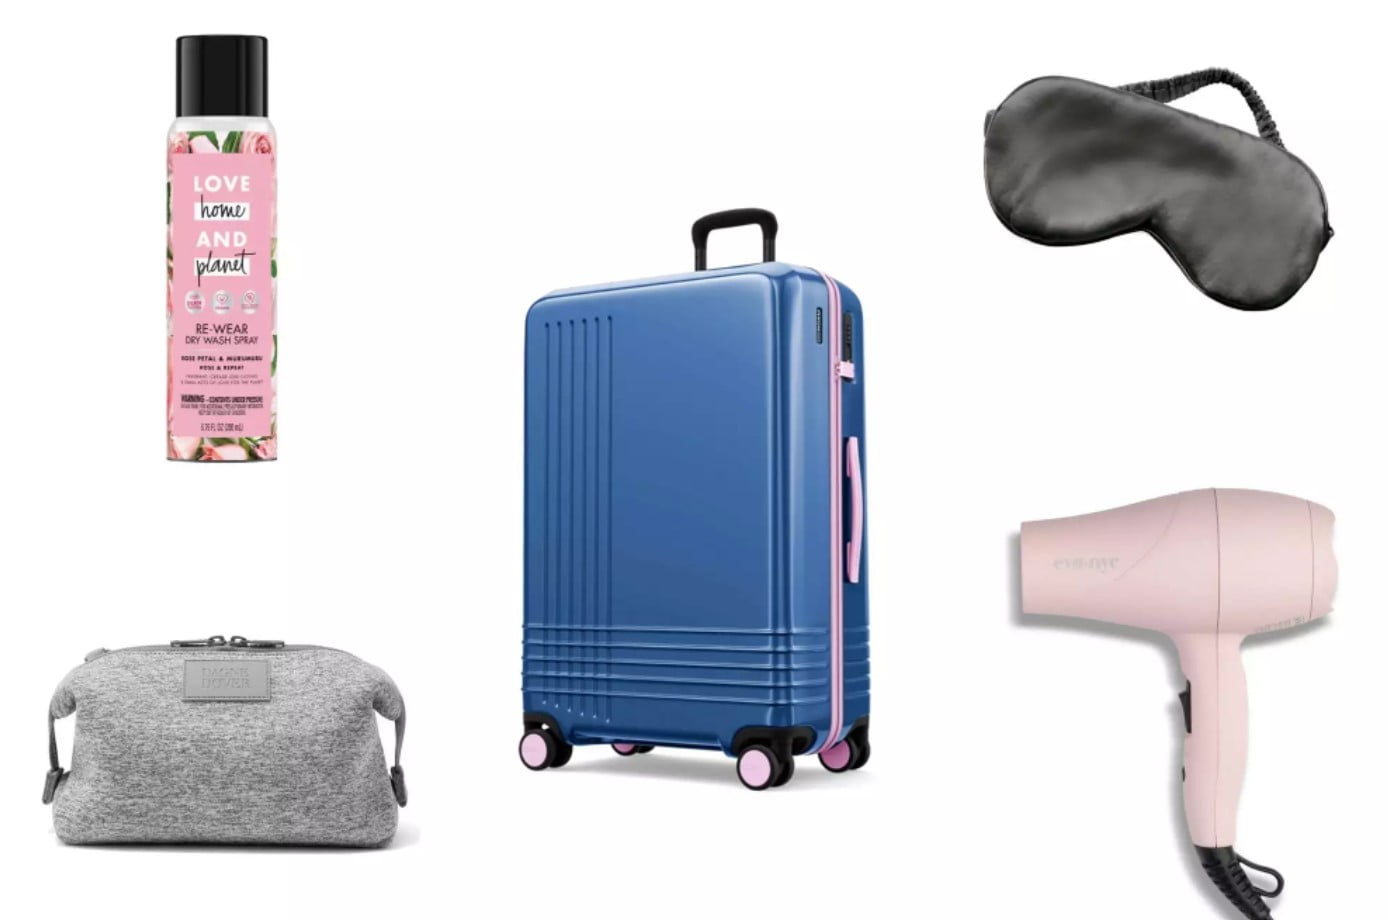 Luggage & Travel Gear